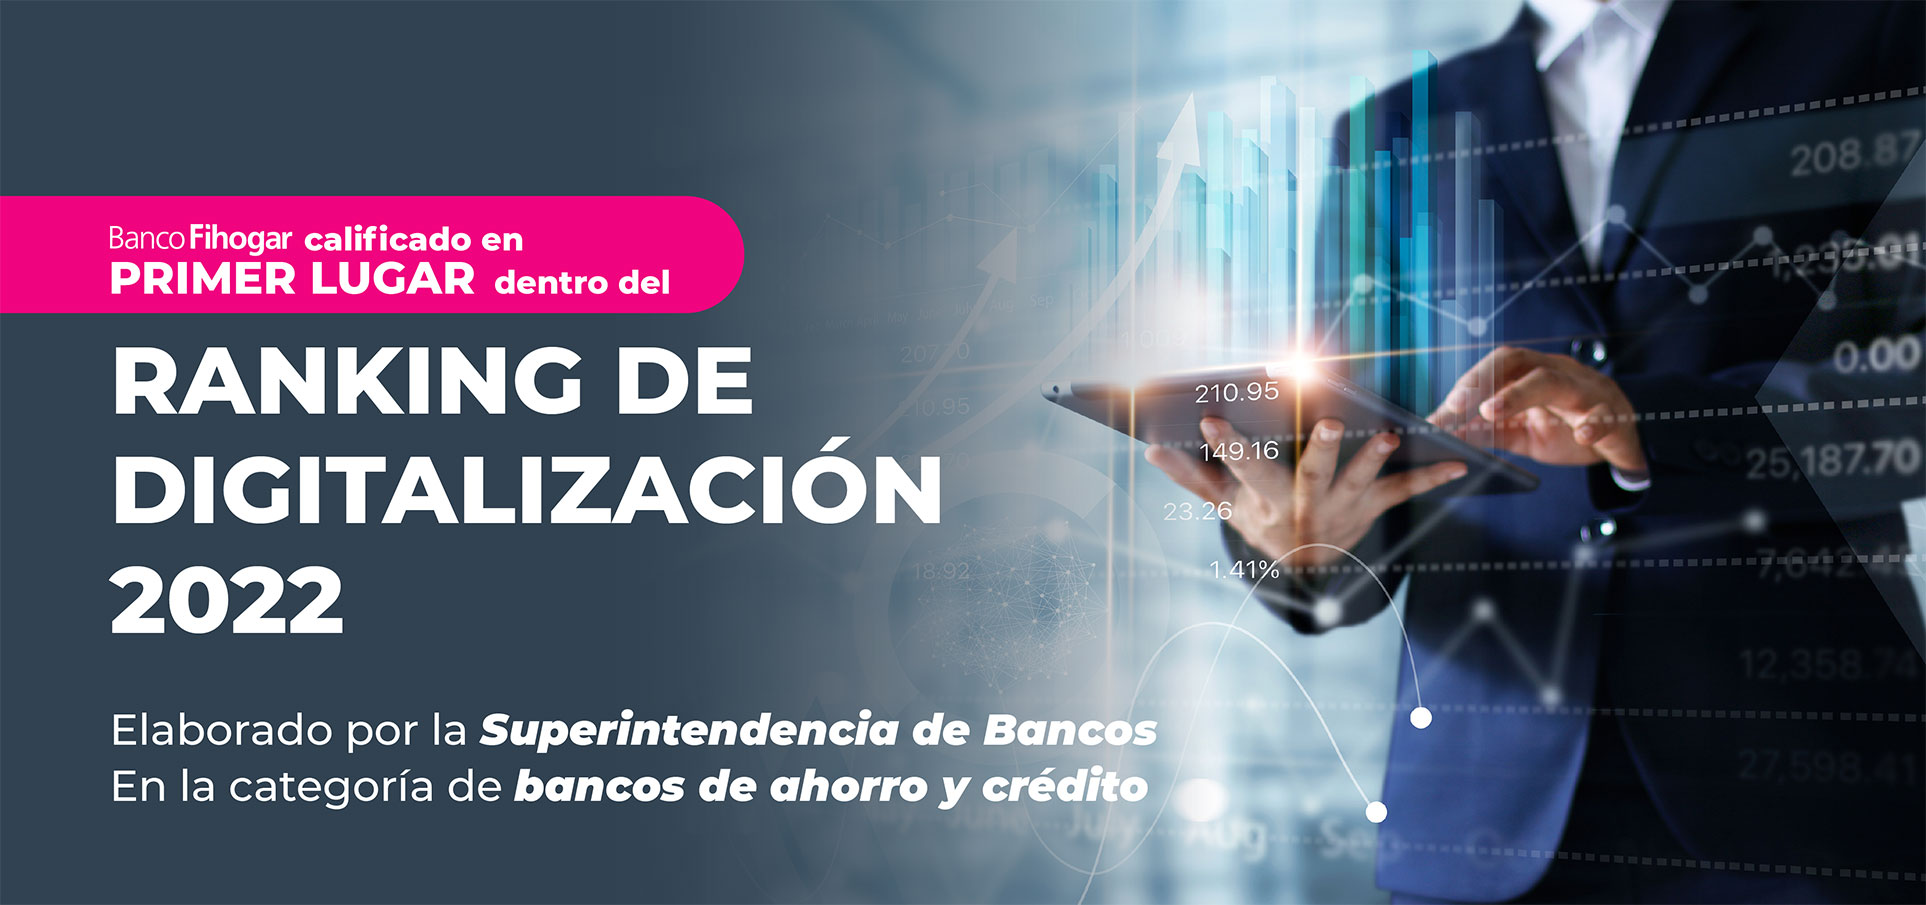 Ranking de digitalización del sector bancario dominicano 2022